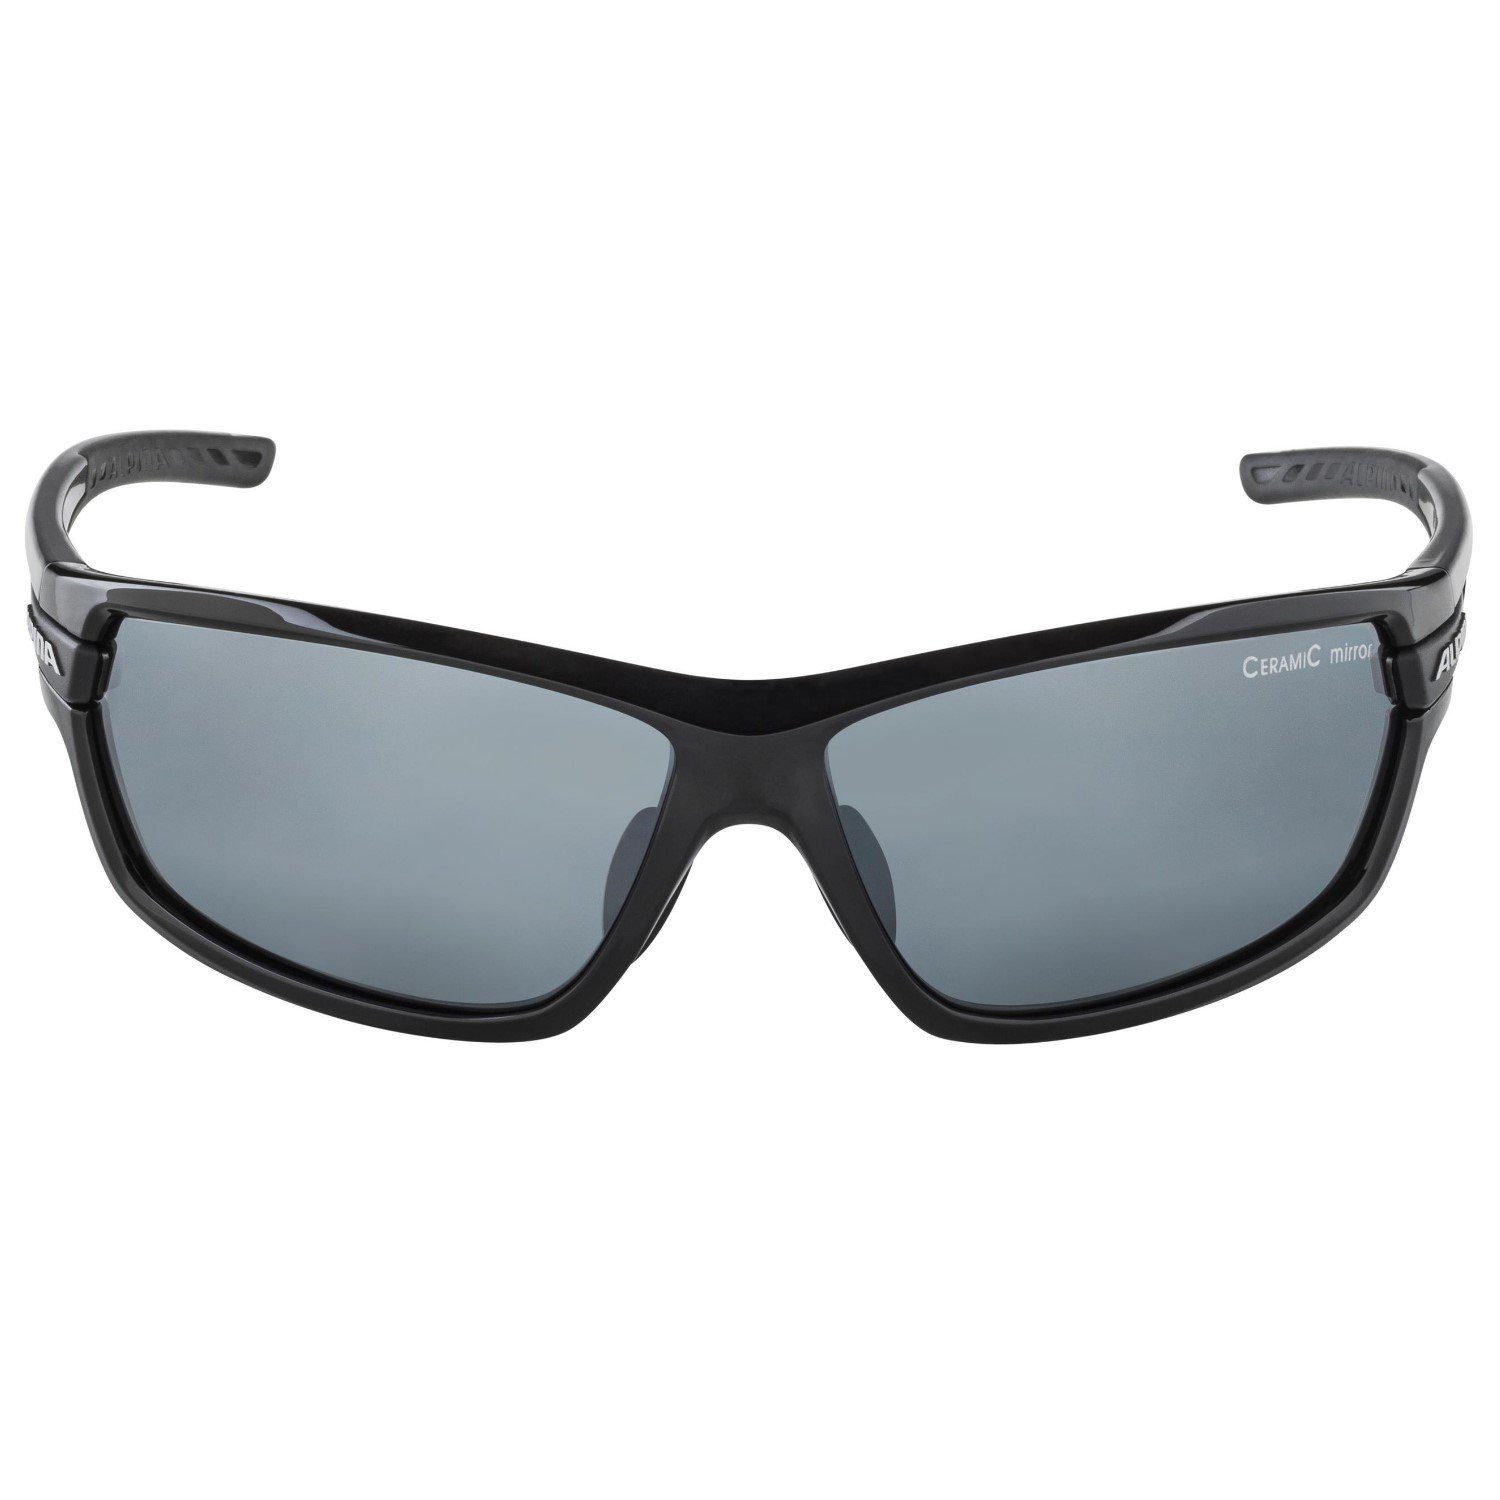 Alpina Sports mit Wechselscheiben 2.0 TRI-Scray Sportbrille Dirtblue Sonnenbrille Matt